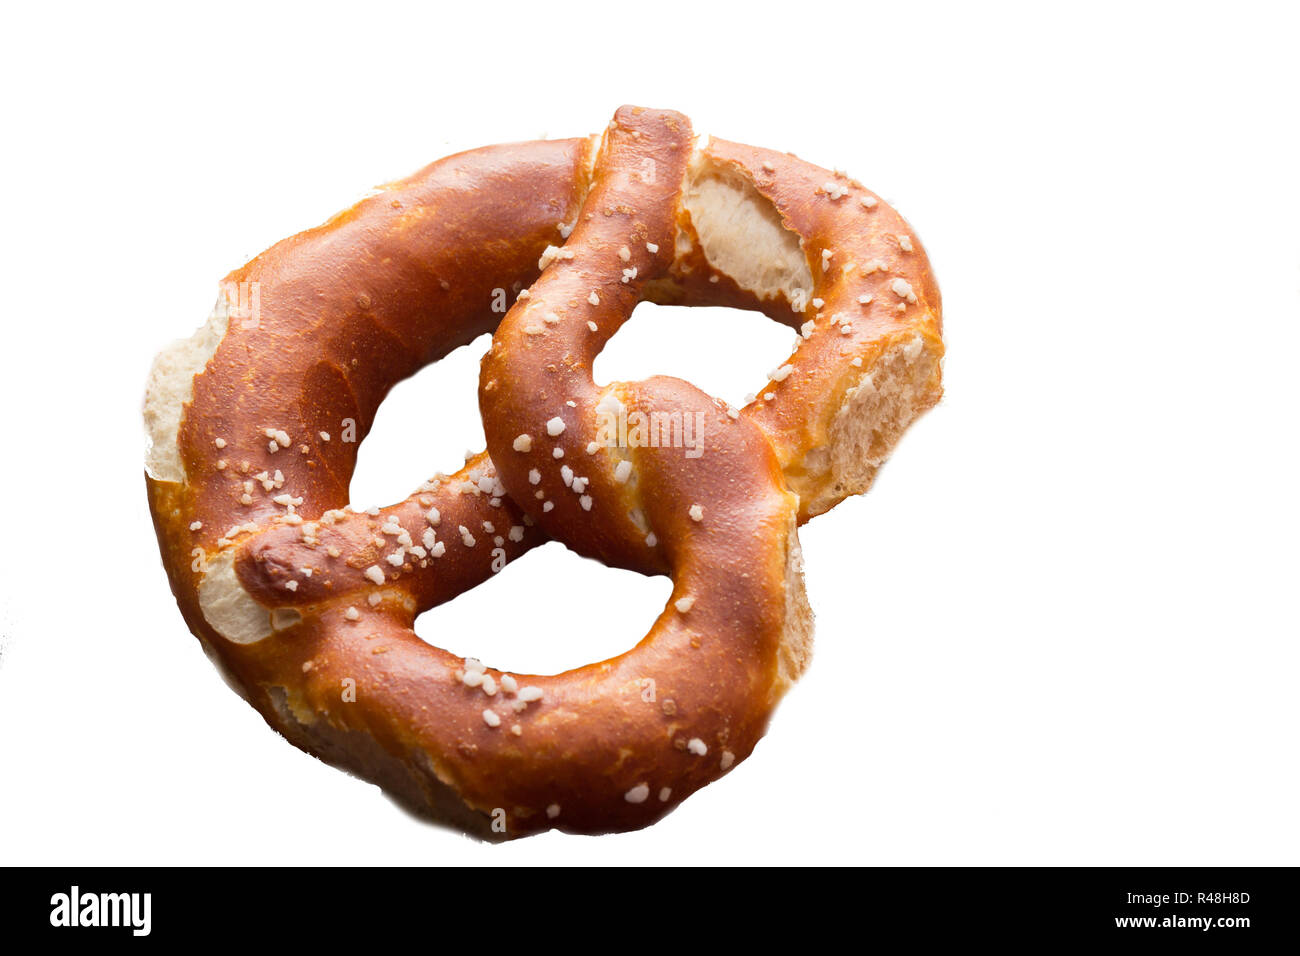 a pretzel - optional Stock Photo